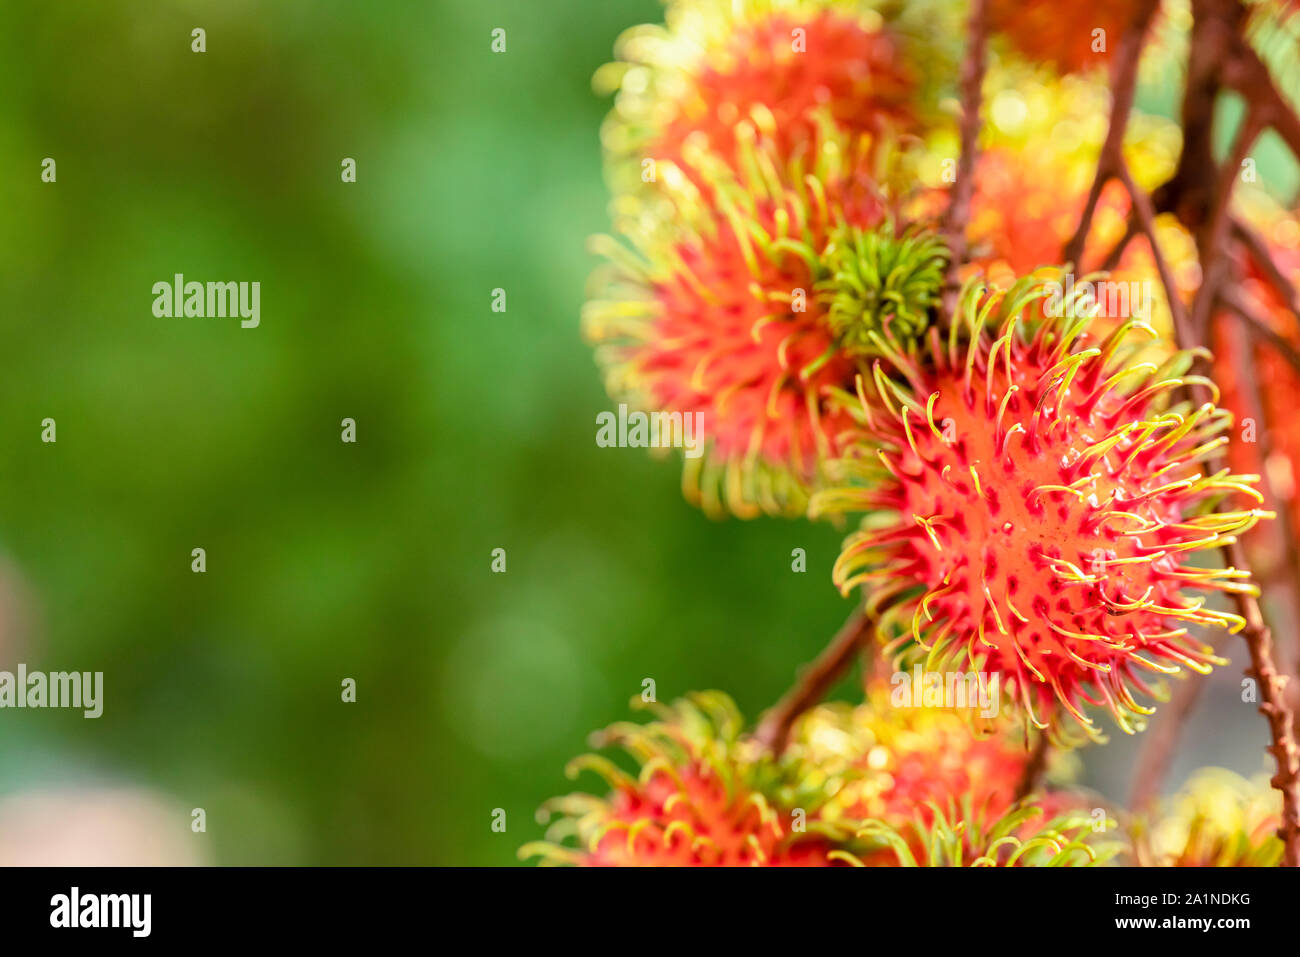 Tolle Nahaufnahmen der reifen Früchte Rambutan (Nephelium lappaceum) Hängen an einem Baum Stockfoto